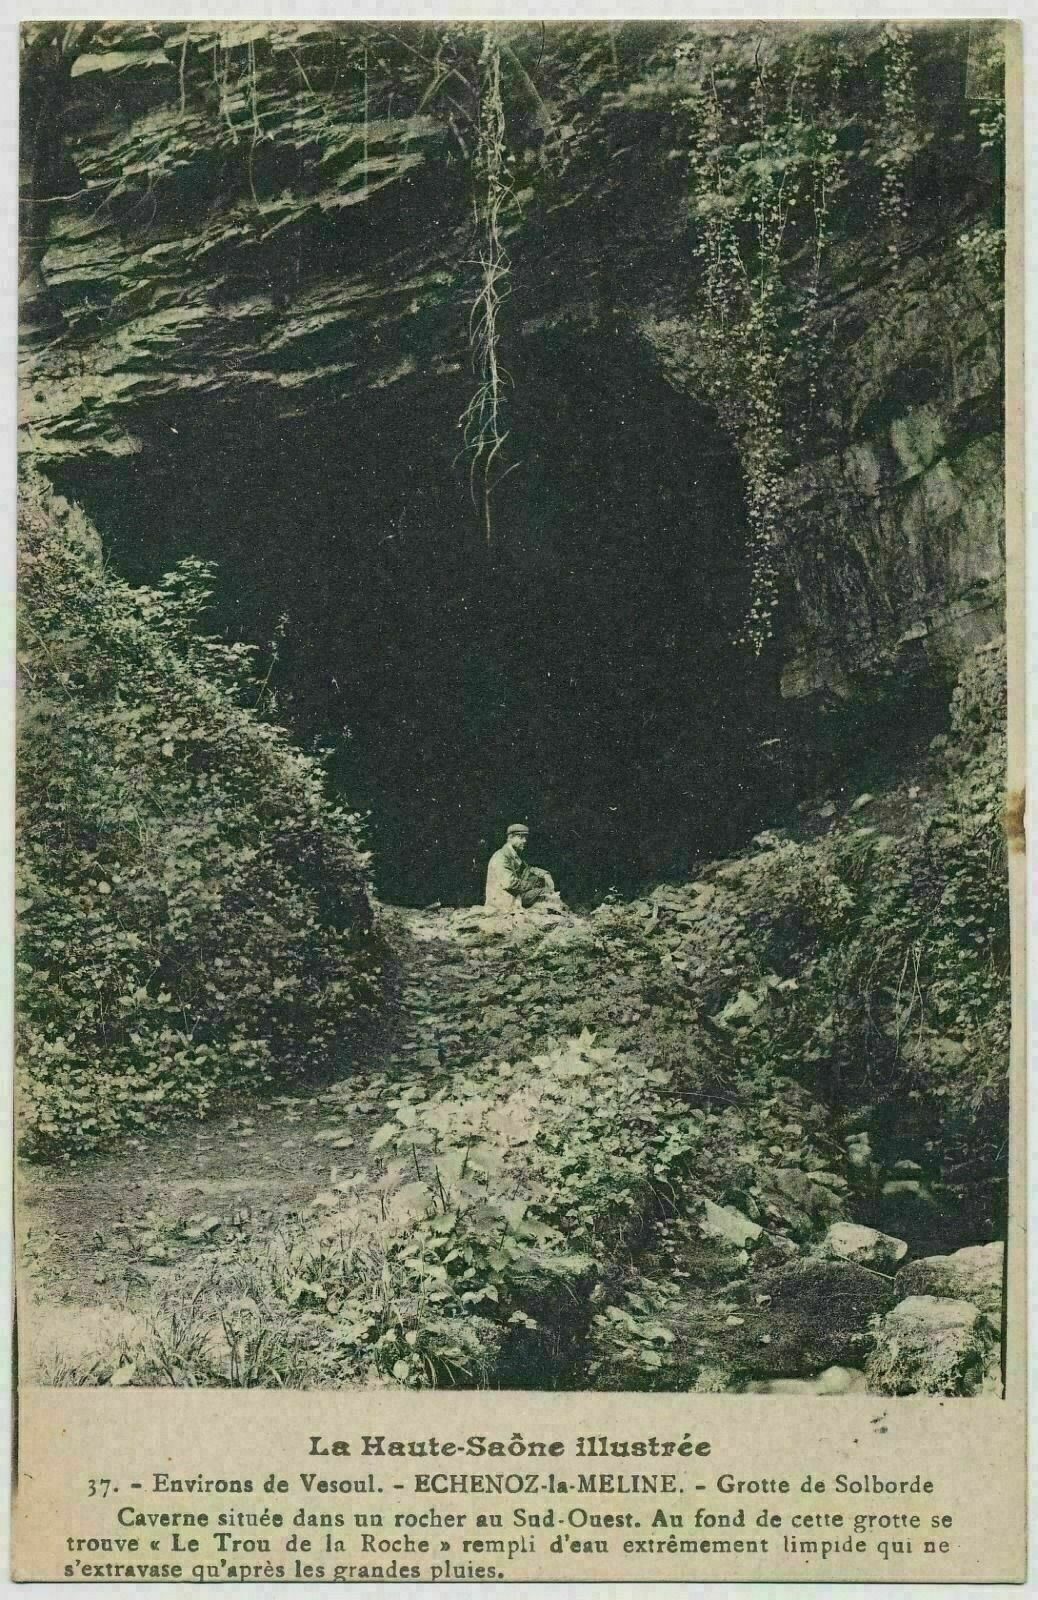 France - Haute-Saone, Echenoz-la-Meline, Grotto Solborde - Cave, Caverns